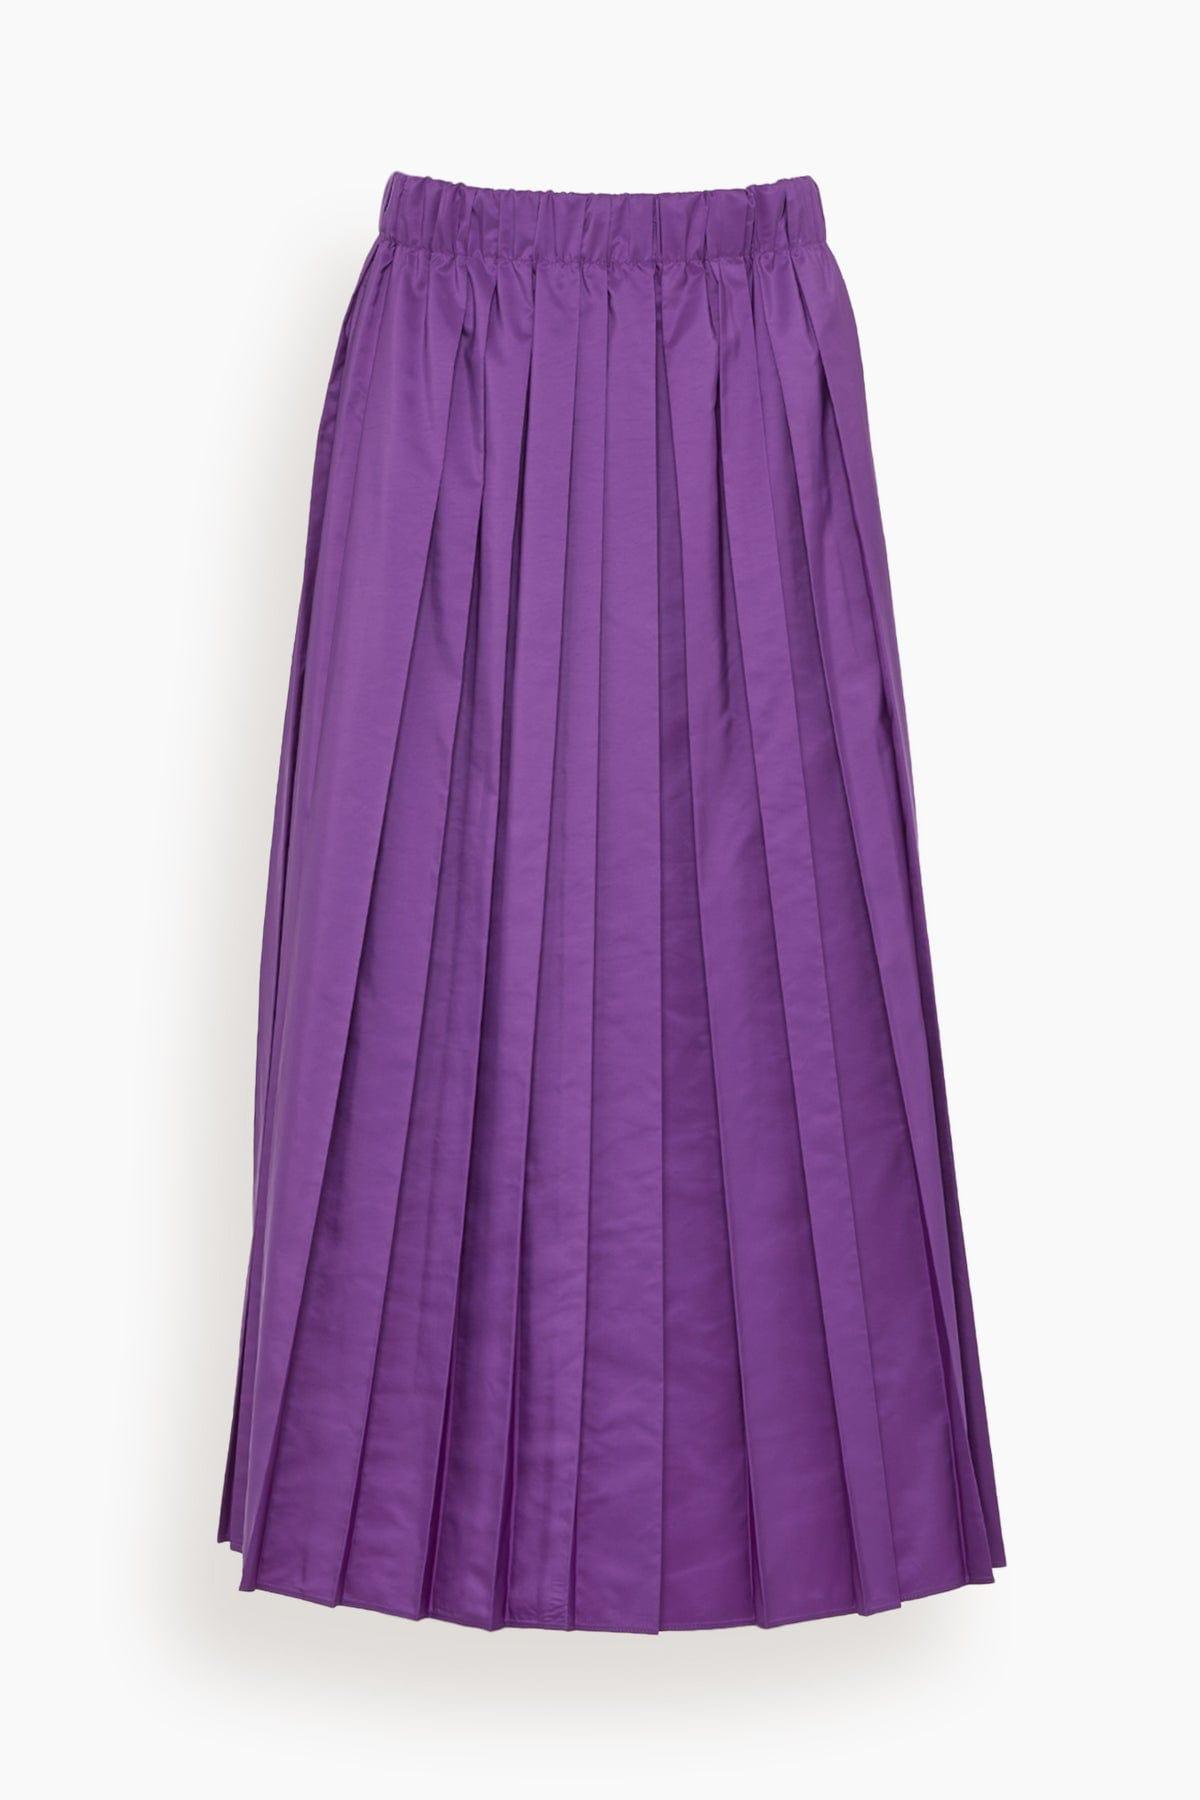 Tibi Italian Sporty Nylon Pleated Pull On Skirt in Purple